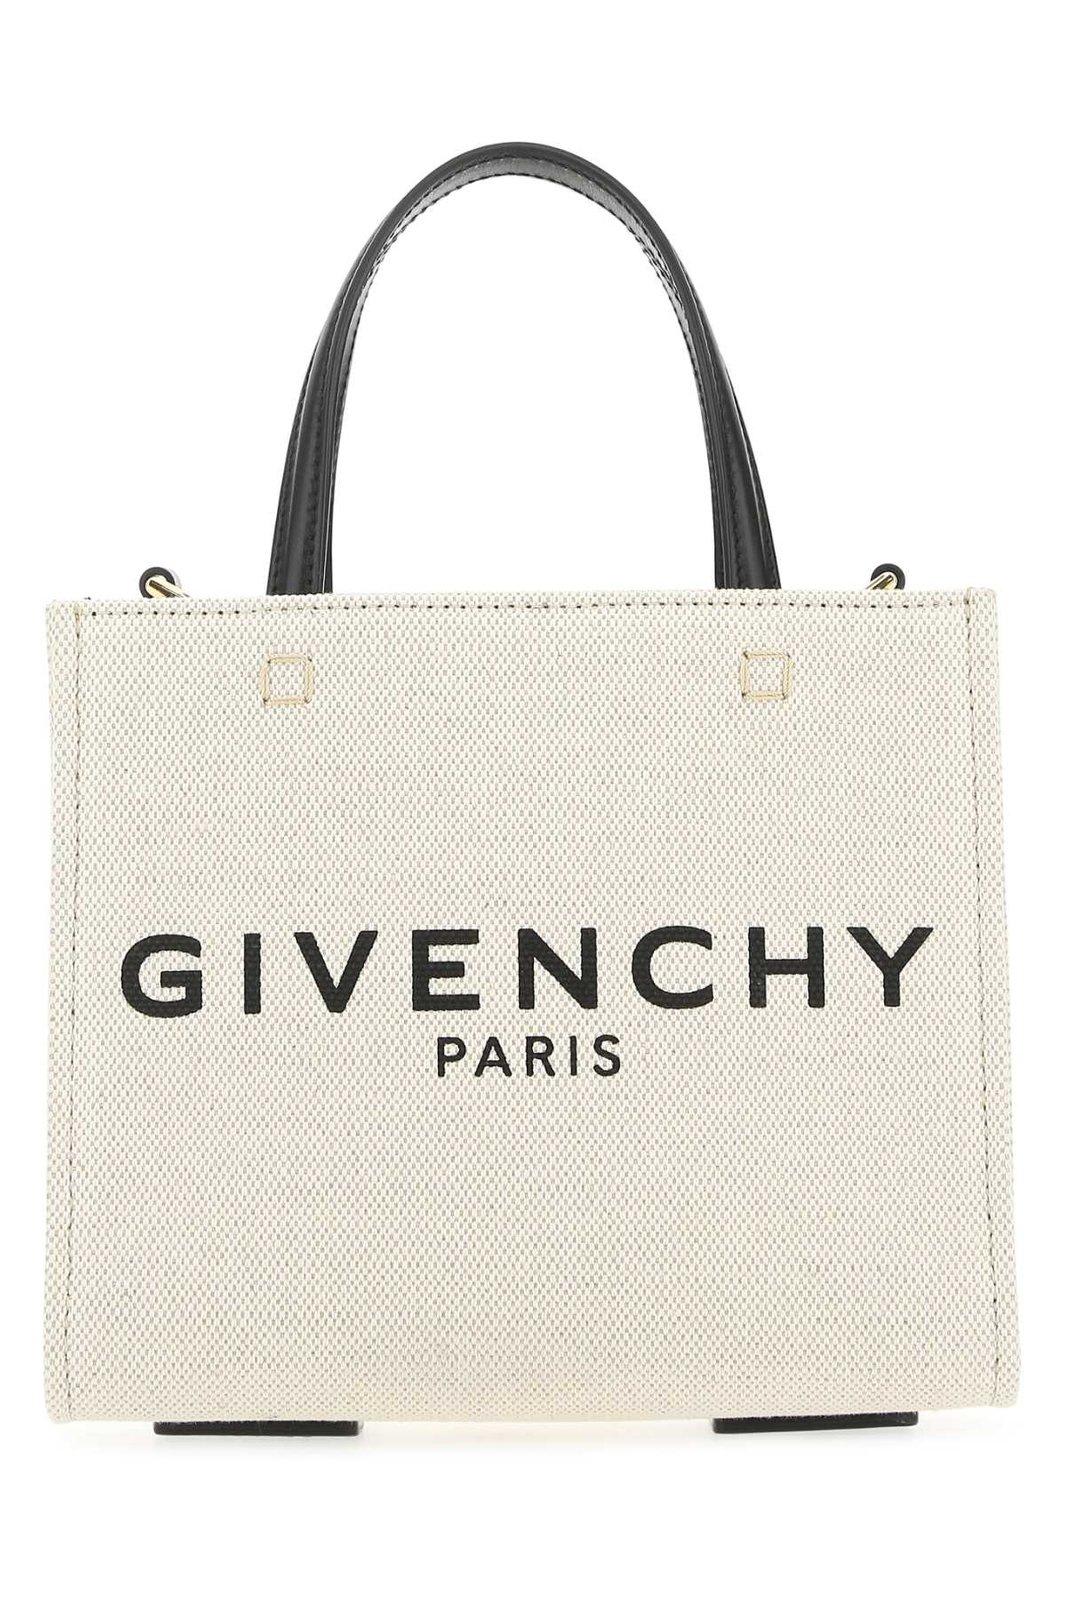 Givenchy Logo Printed Mini Tote Bag